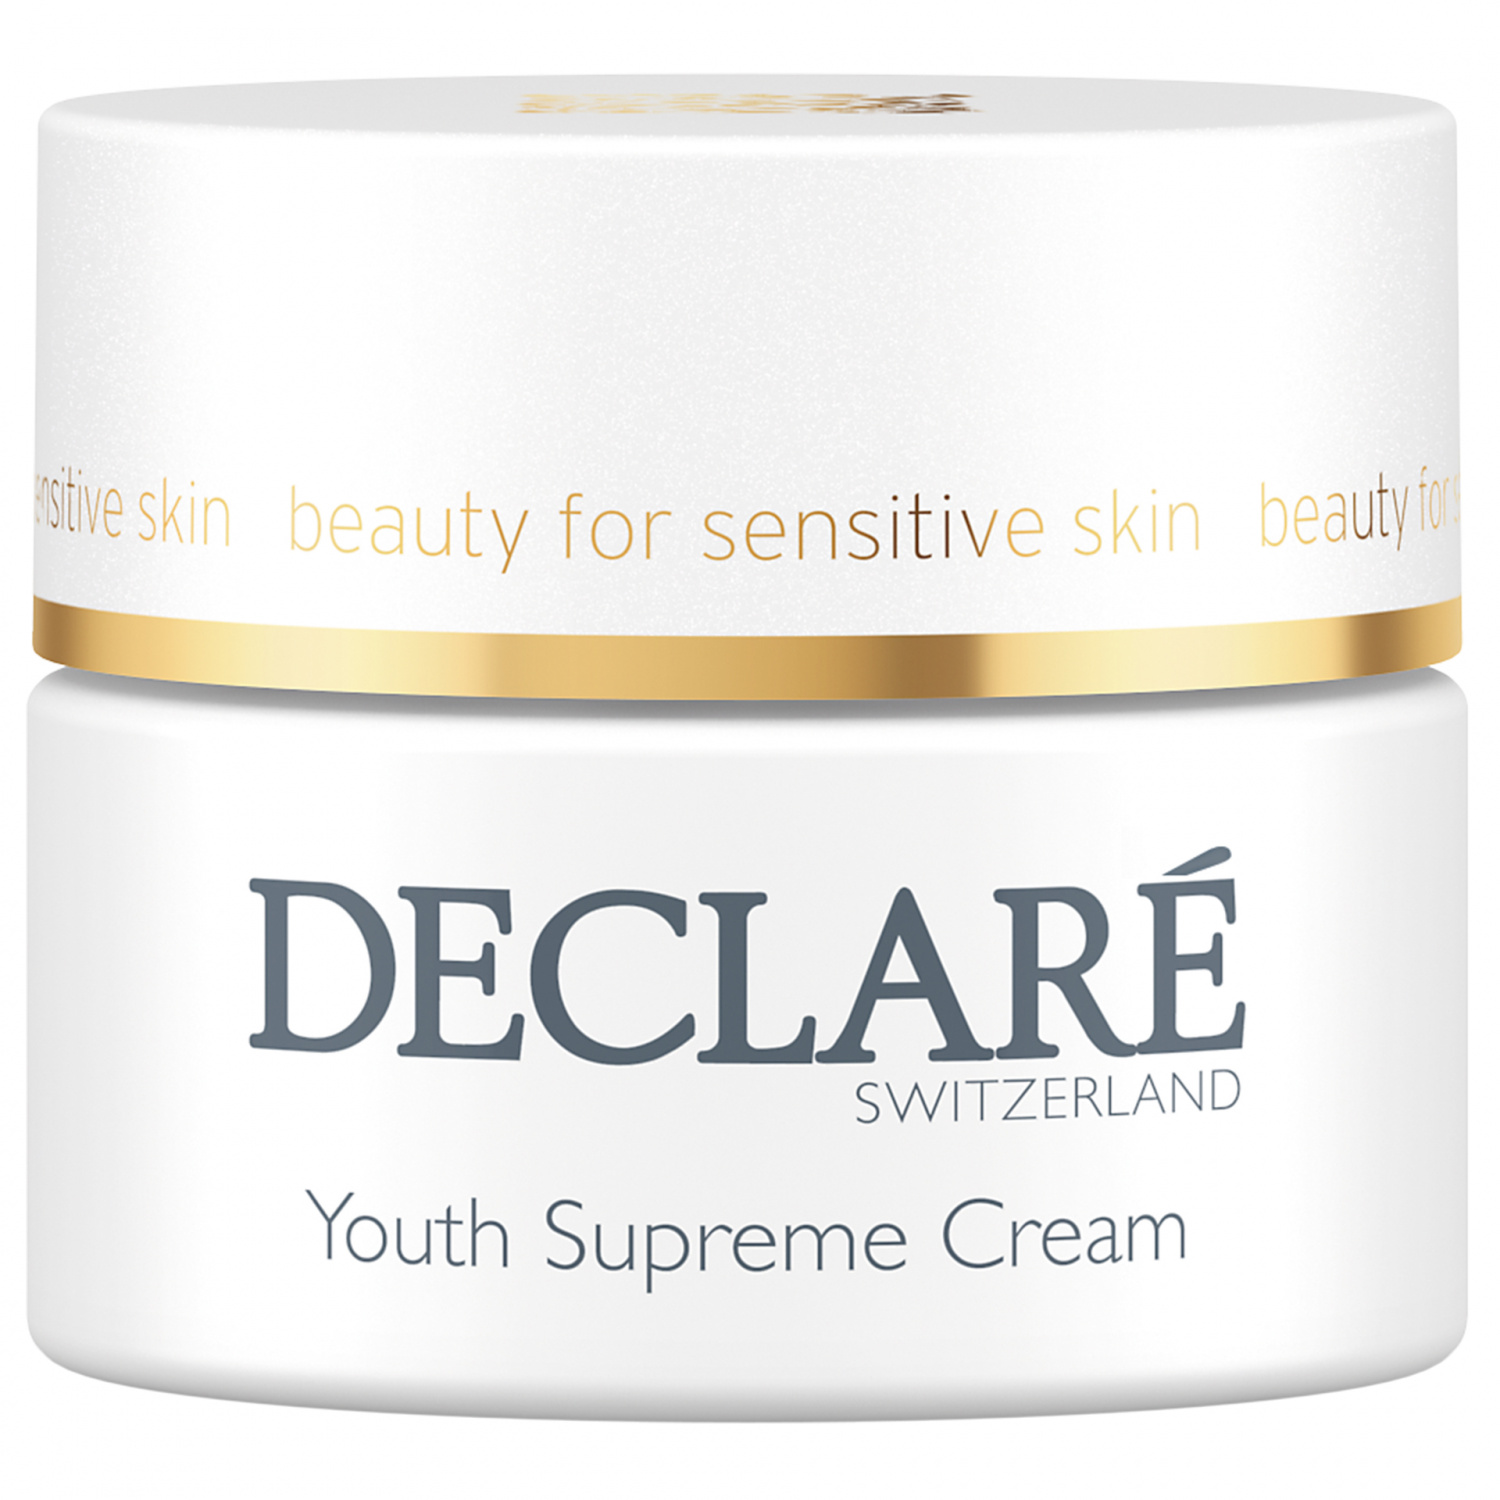 Declare Youth Supreme Cream 50ml. - интернет-магазин профессиональной косметики Spadream, изображение 30738